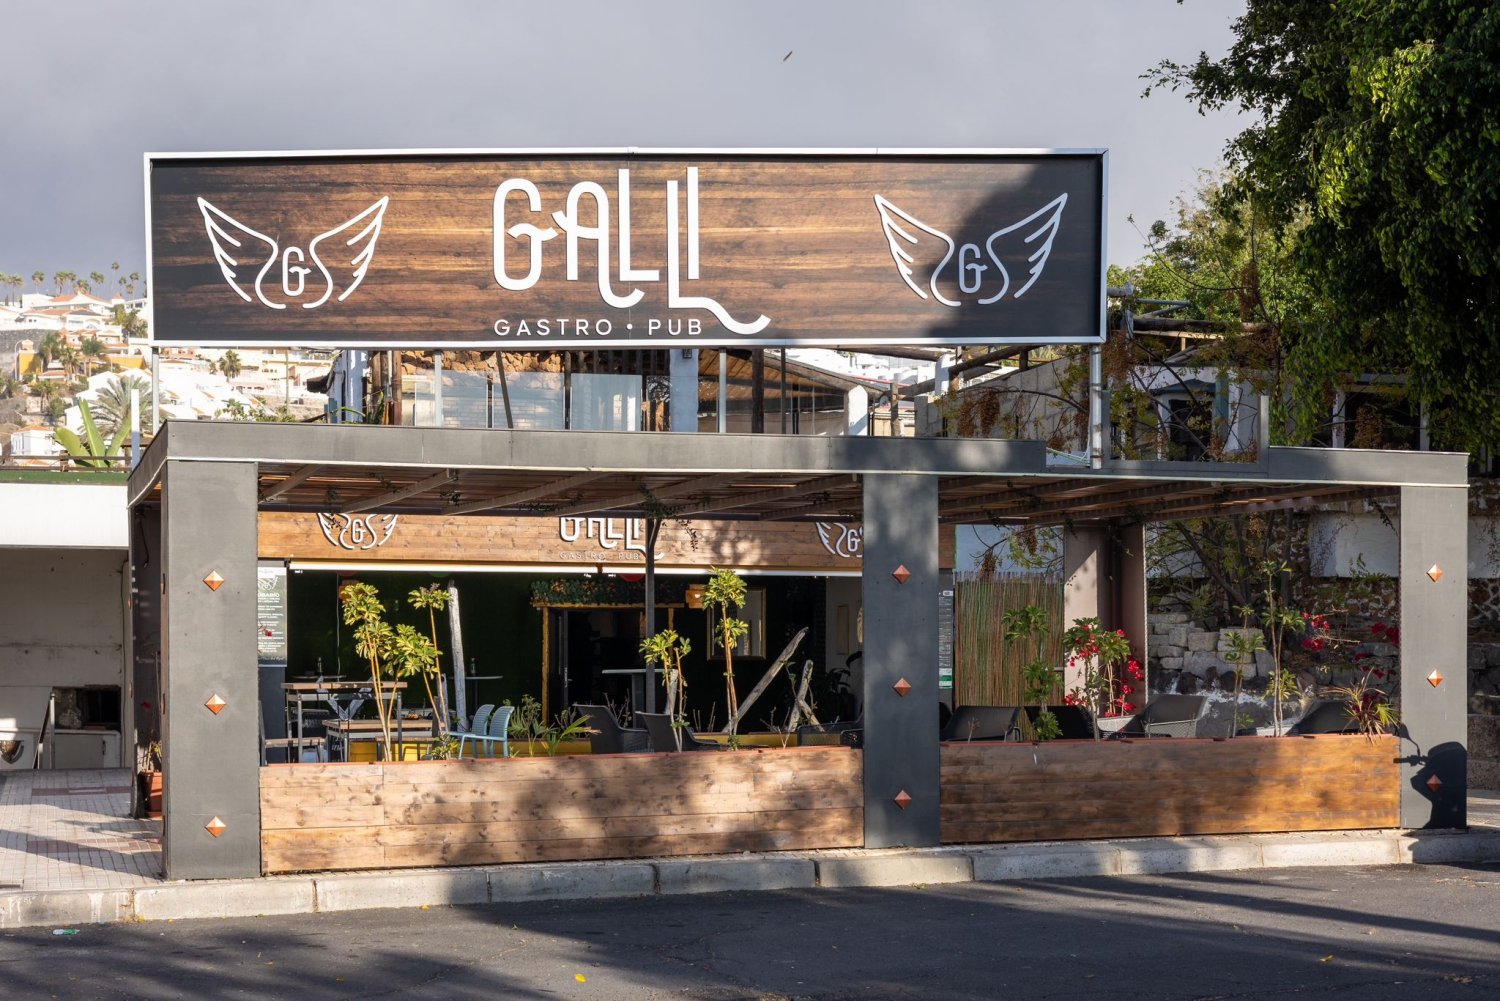 Galli Gastro Pub